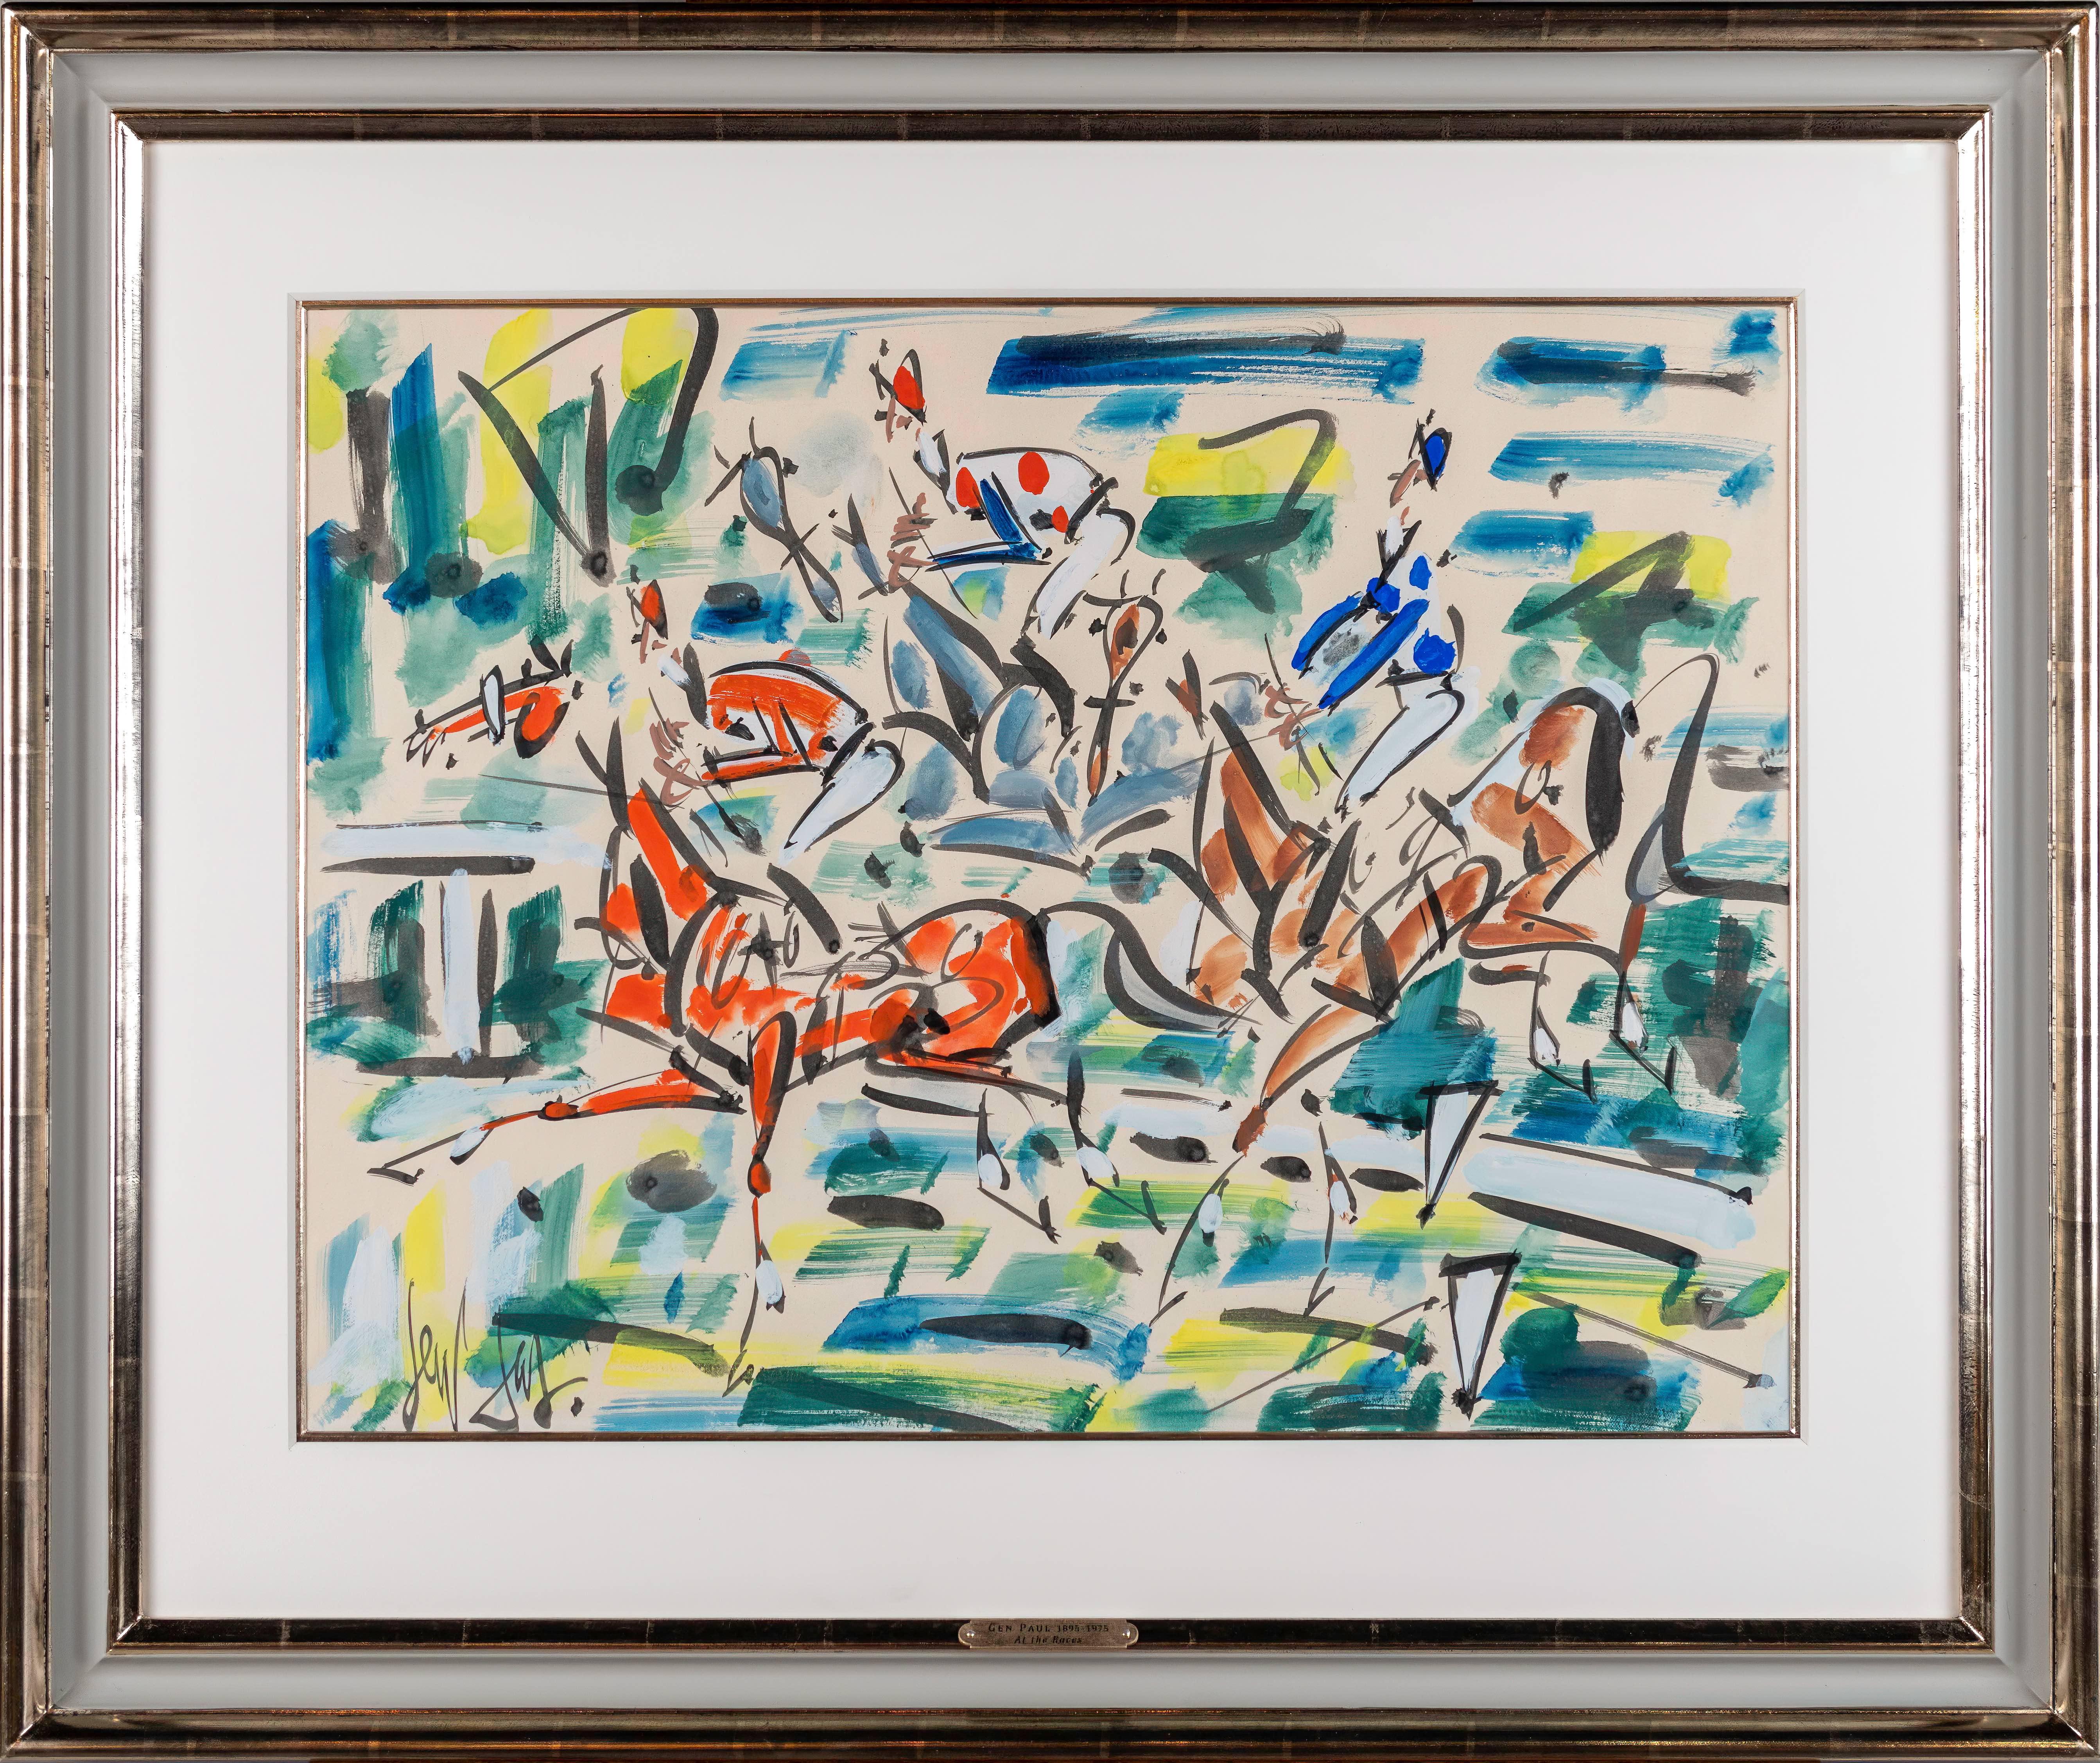 Abstract Painting GEN PAUL - Peinture abstraite colorée « At the Races » représentant des chevaux et des jockeys courses à Paris 